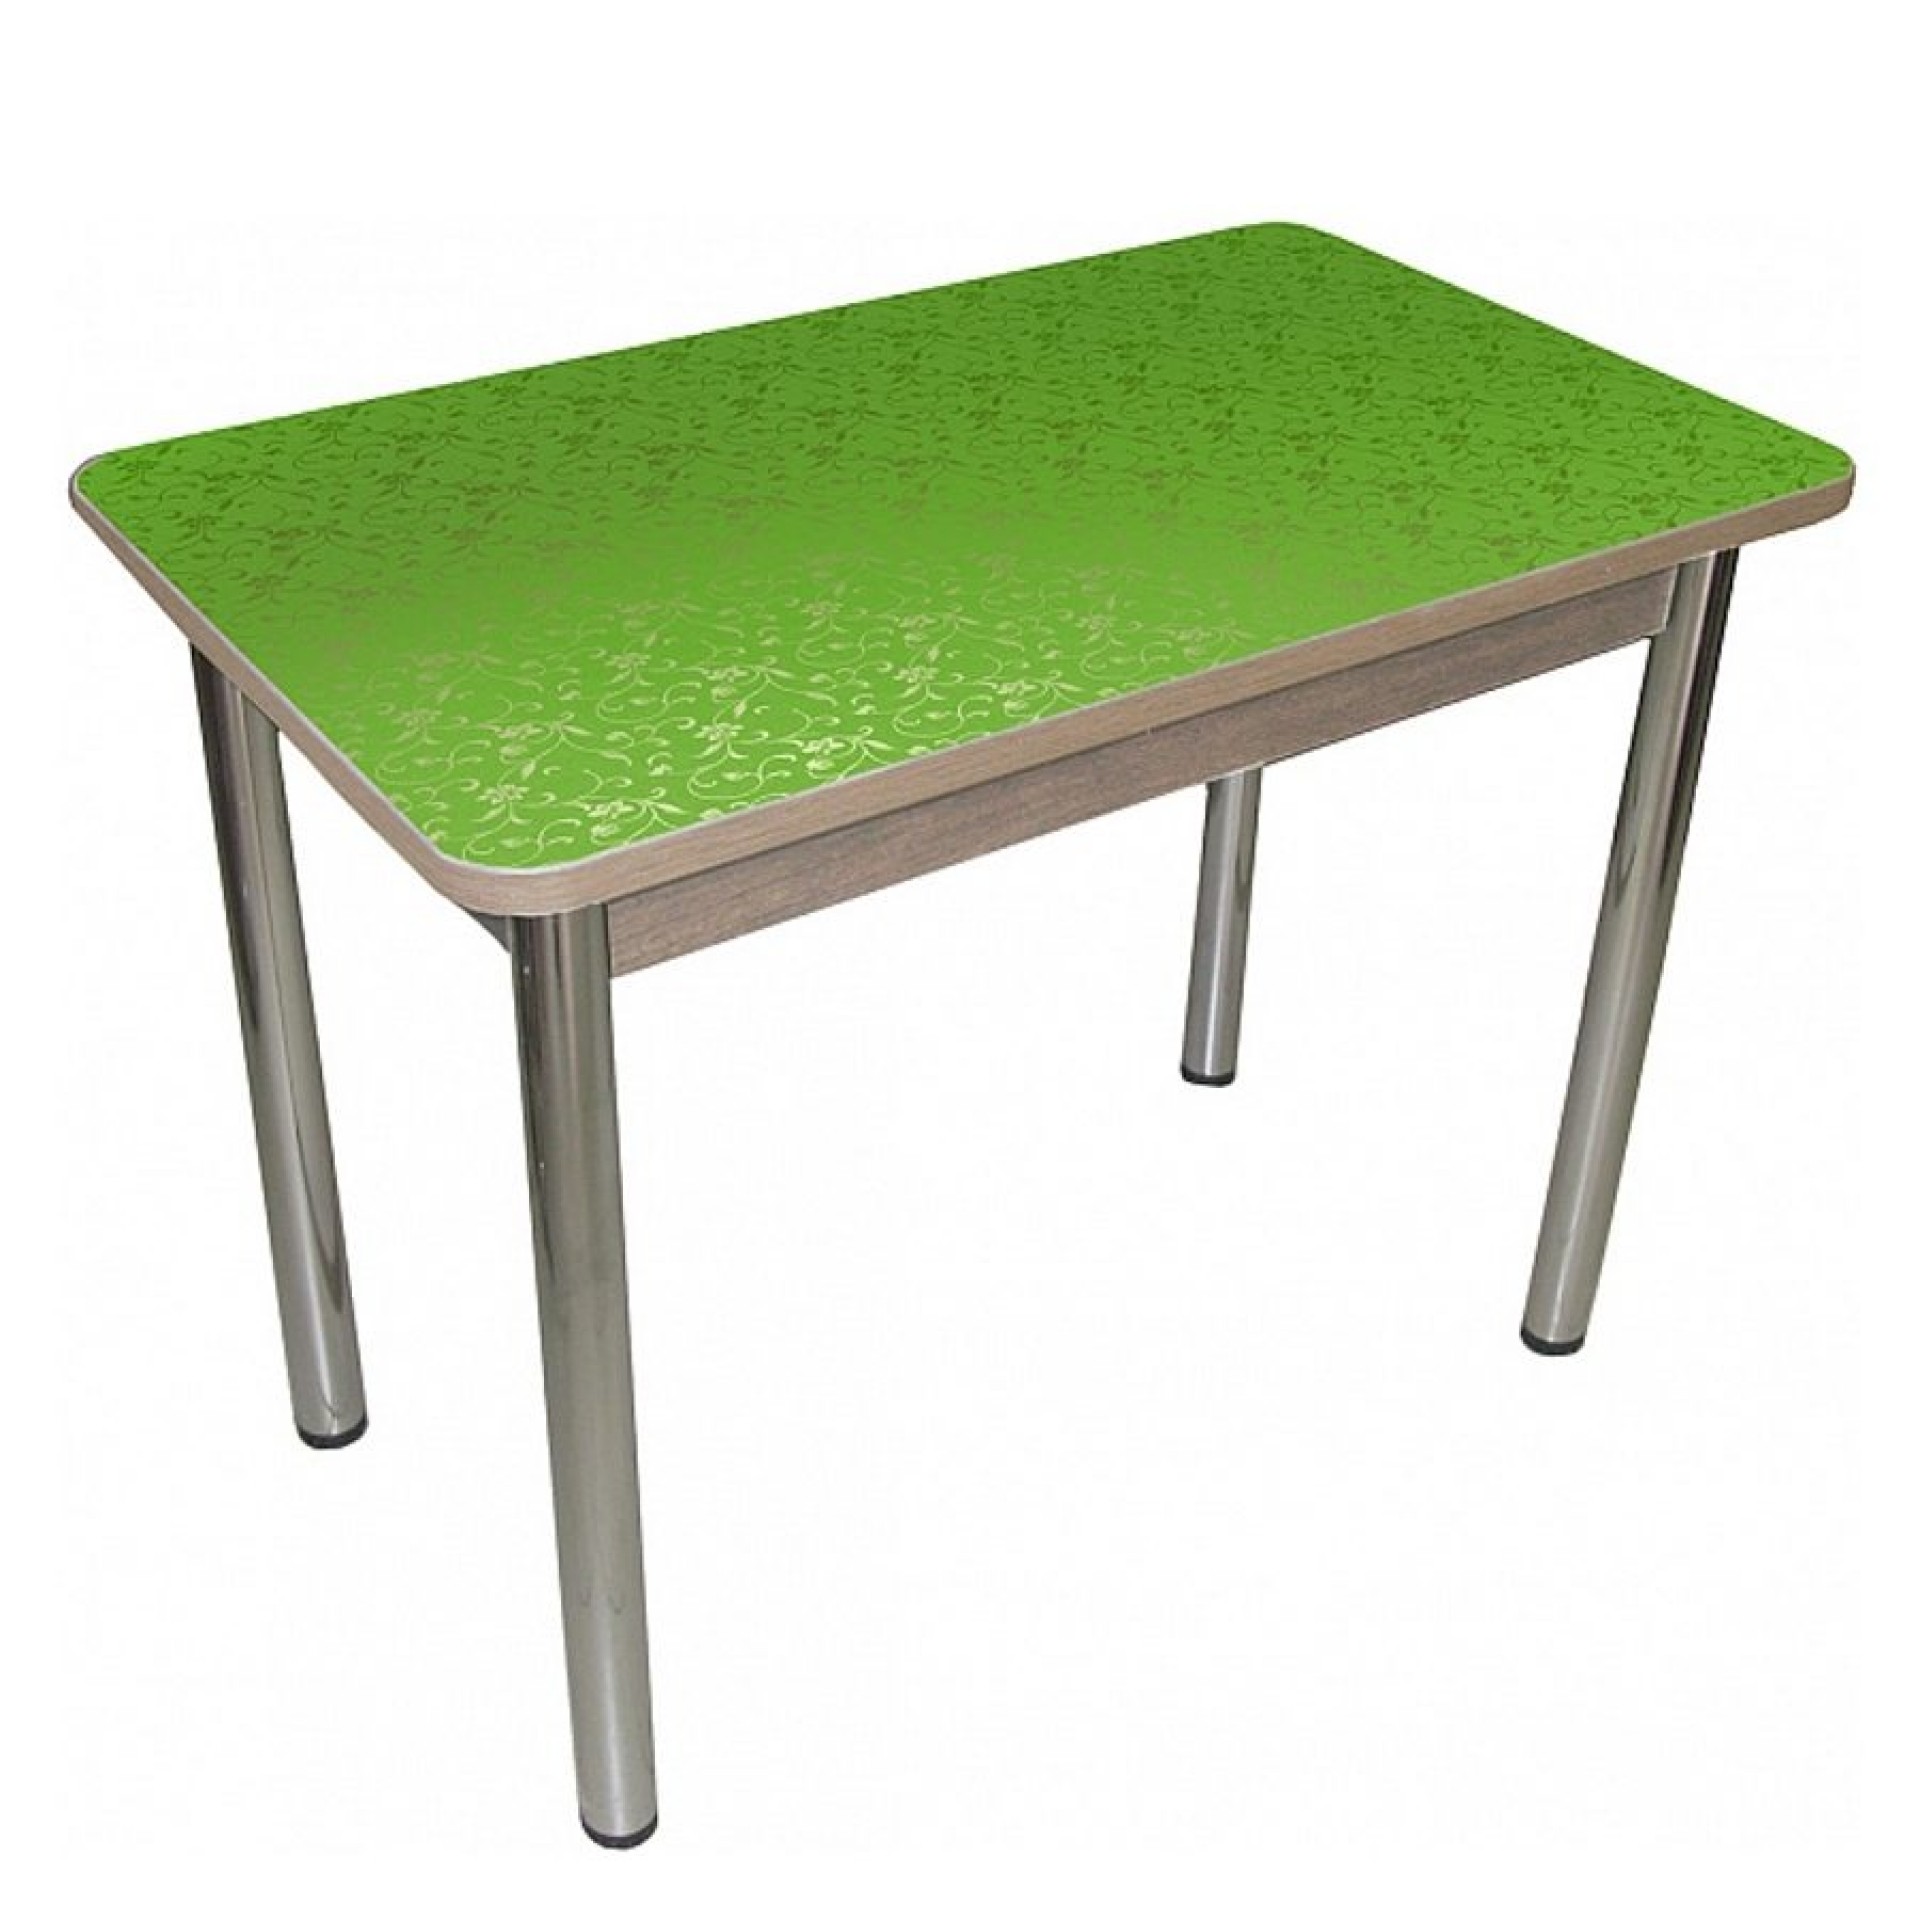 Кухонные столы от производителя недорого. Стол Милтон 2 Столпром. Стол кухонный. Зеленый стол. Стол дачный.